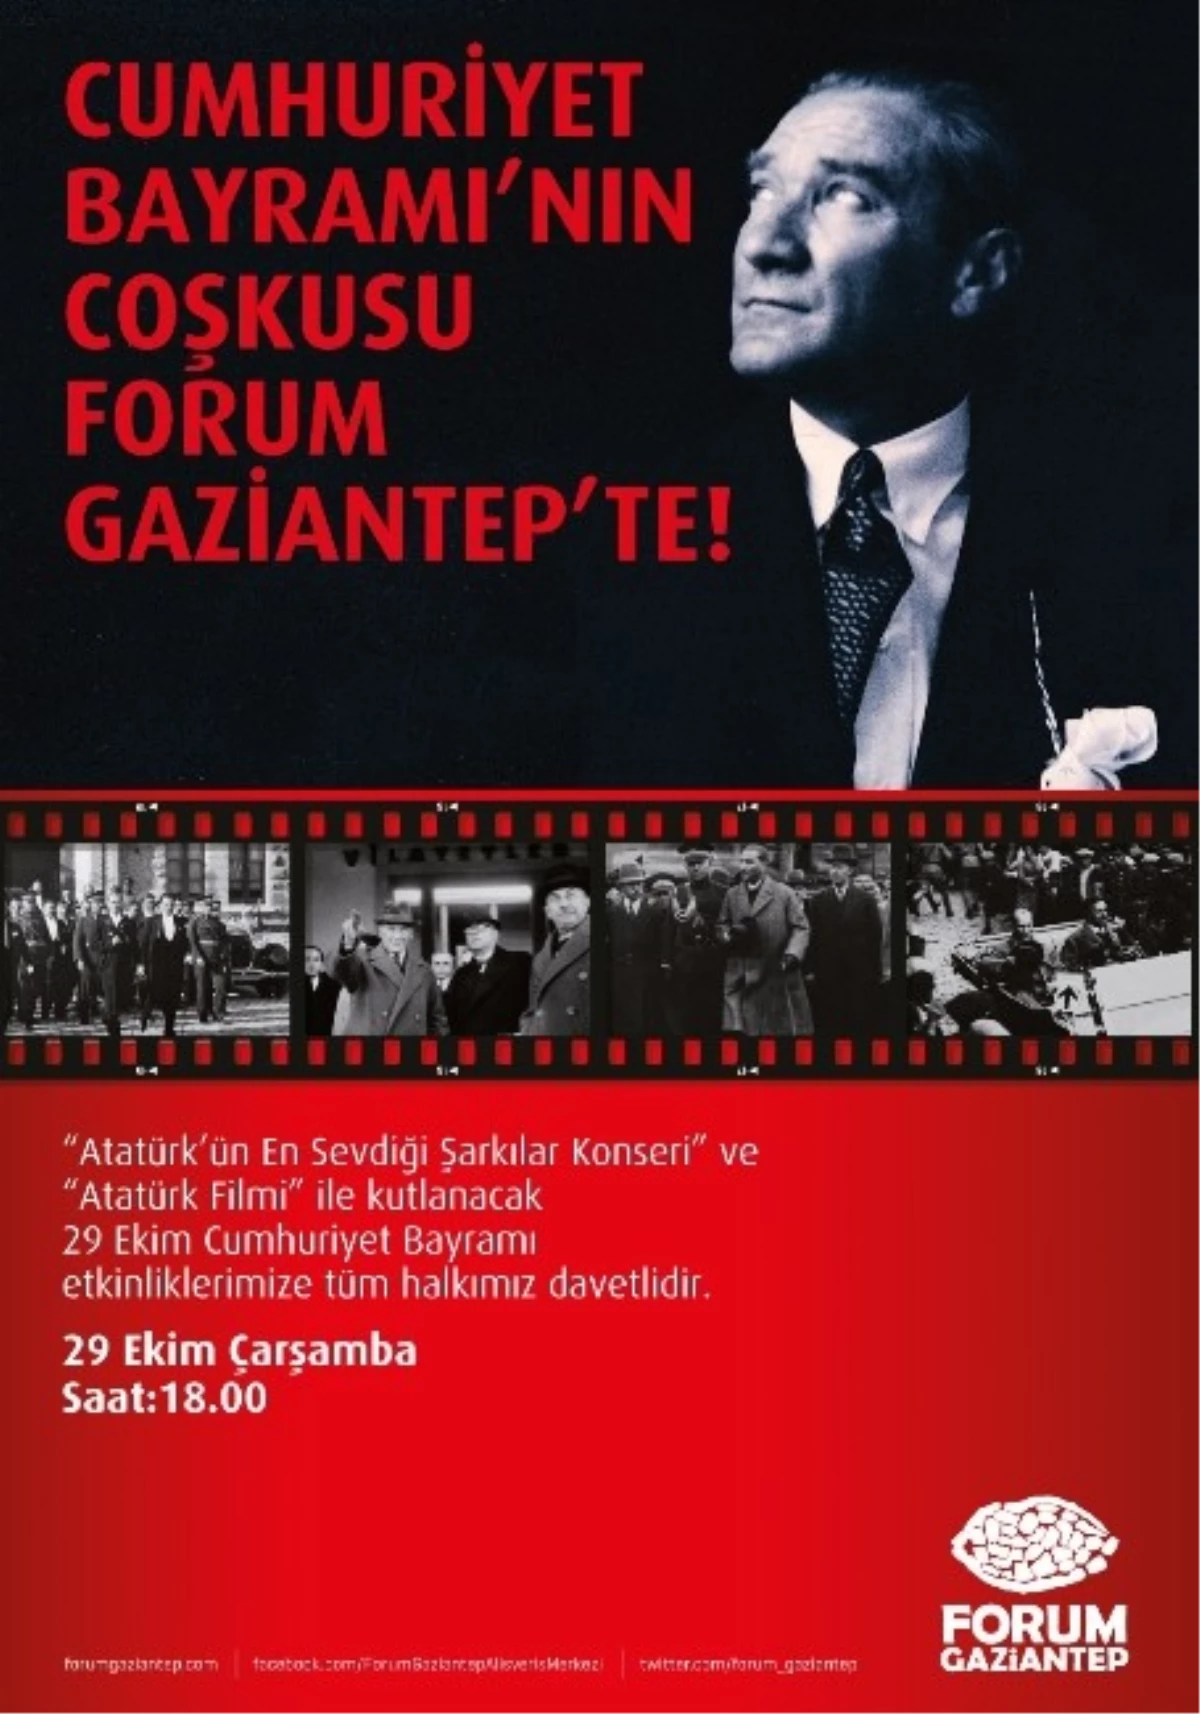 Forum Gaziantep, Cumhuriyet Bayramı\'nı Ata\'nın En Sevdiği Şarkılarla Kutlayacak